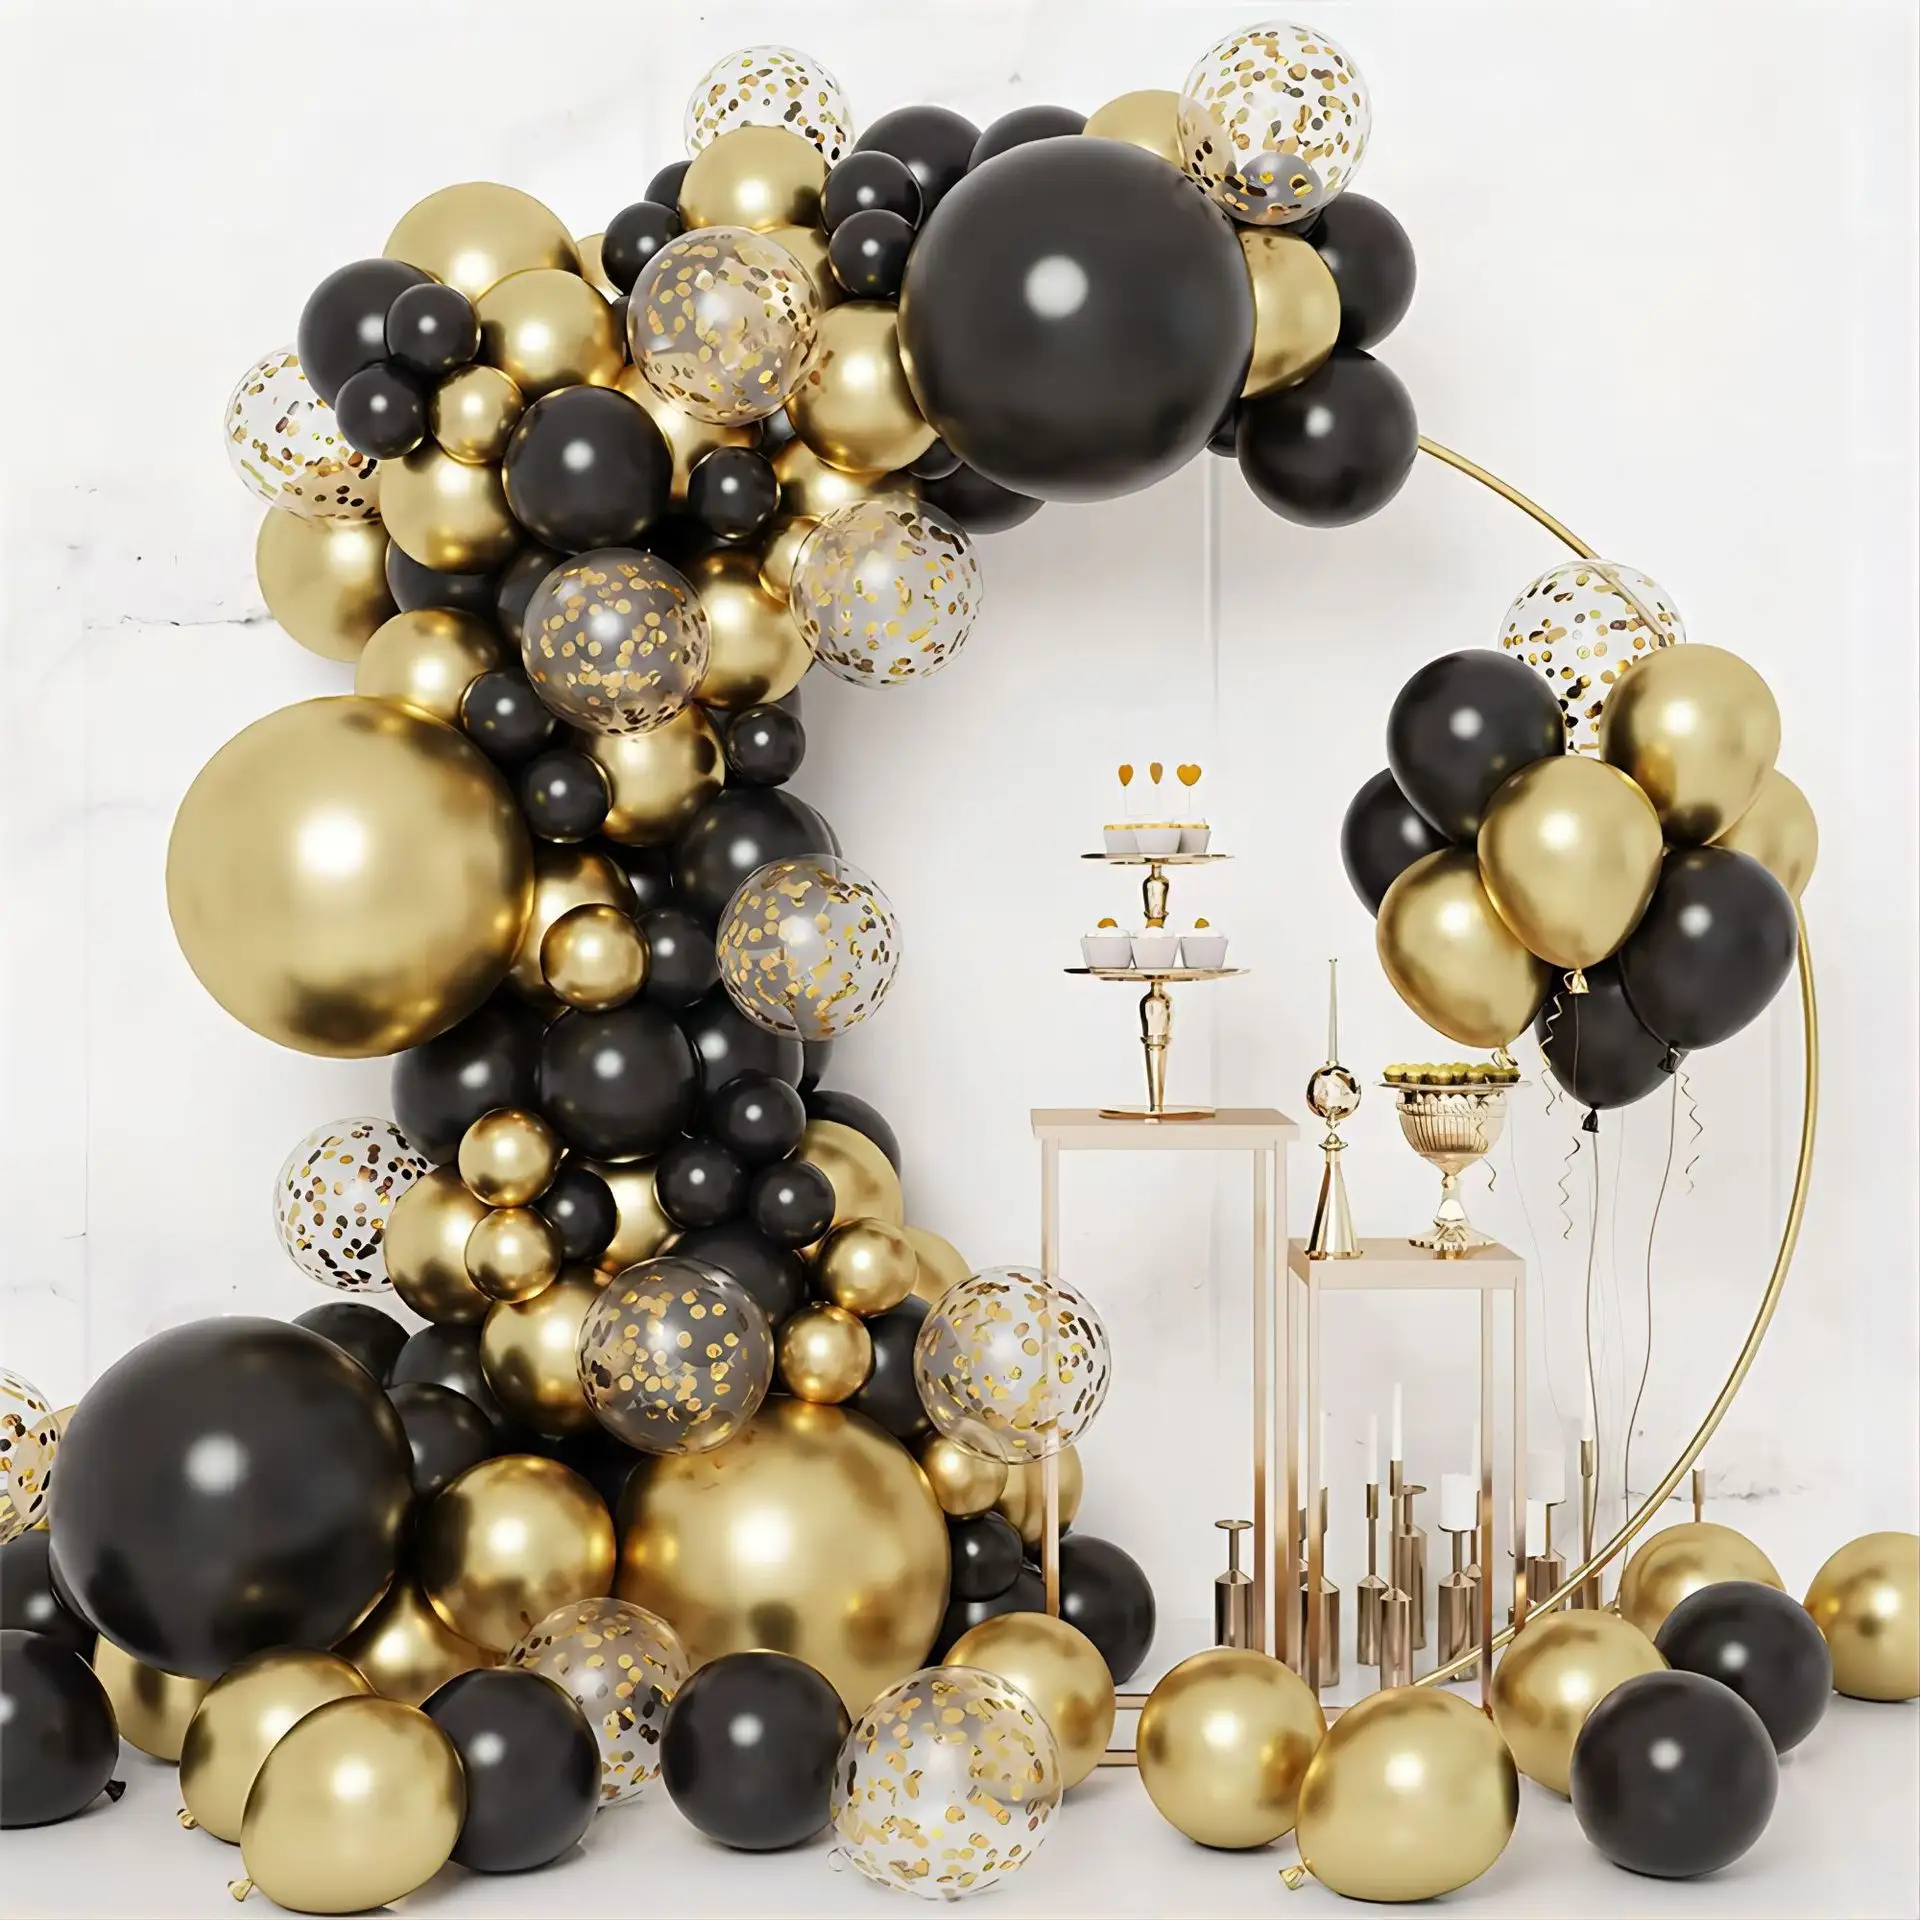 133 قطعة بالونات مقوسة ذهبية وسوداء اللون مجموعة بالونات ذهبية وسوداء اللون لحفلات الزفاف وحفلات أعياد الميلاد والخلفية للاحتفال بالتخرج